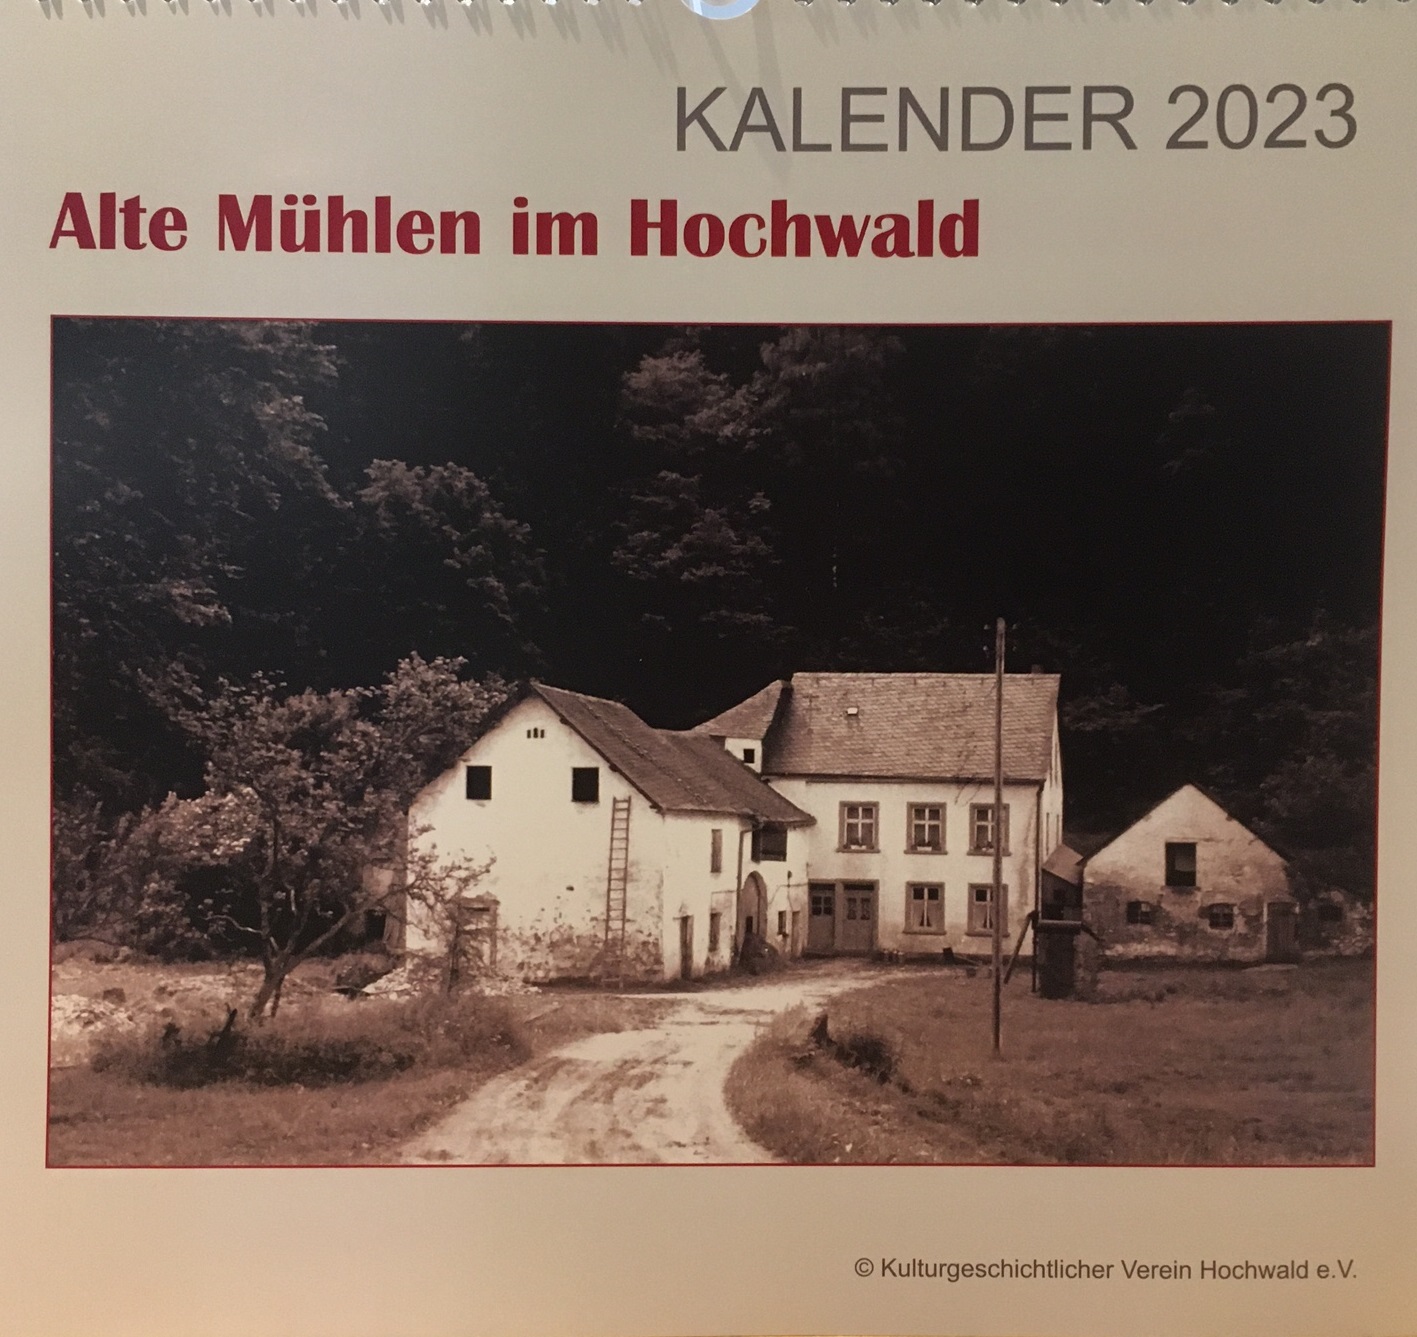 Alte Mühlen im Hochwald 2023